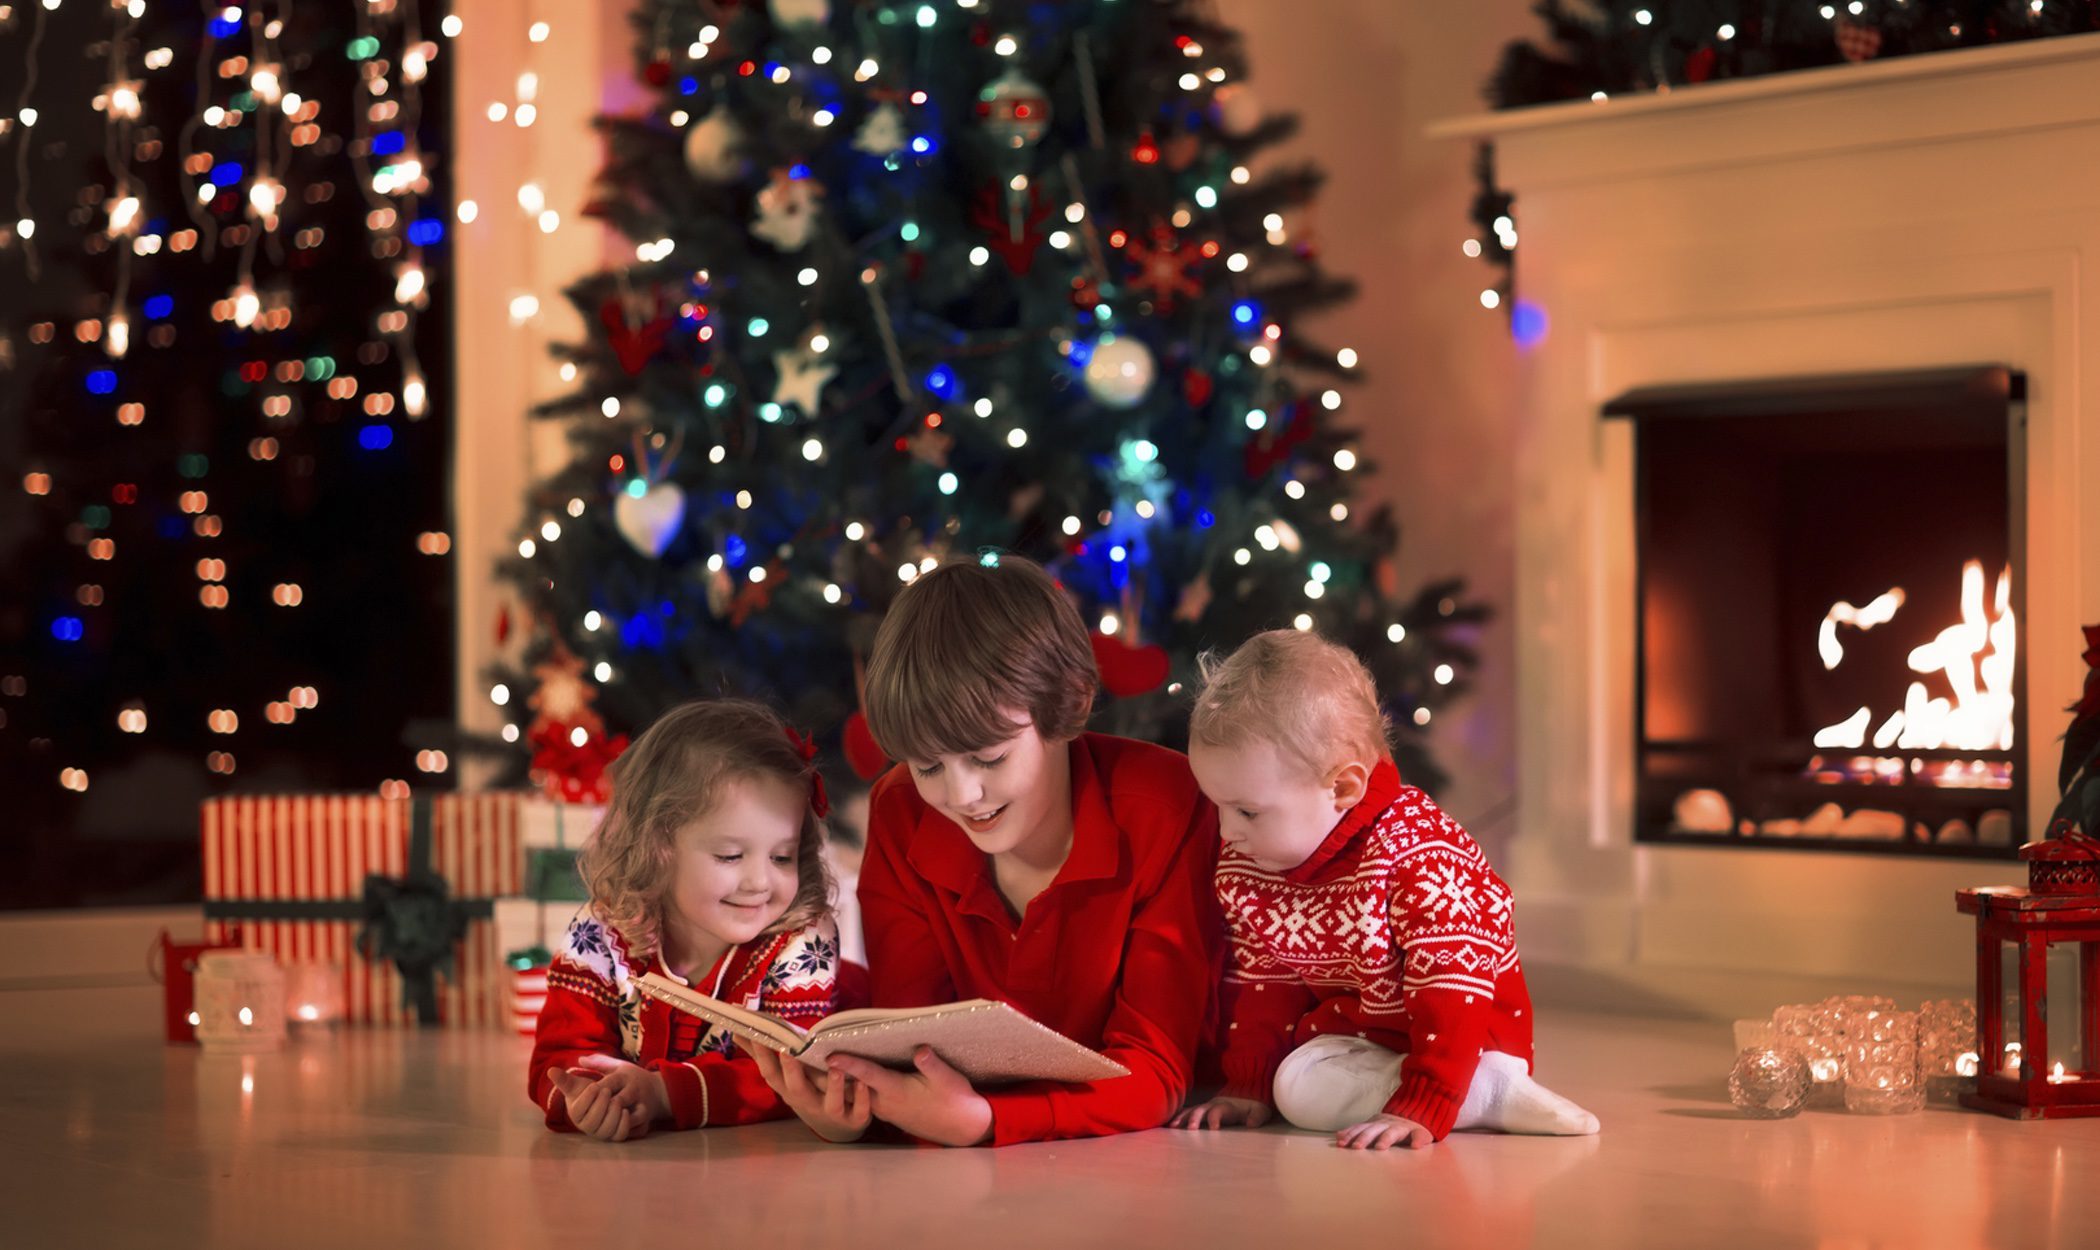 5 cuentos de Navidad para niños